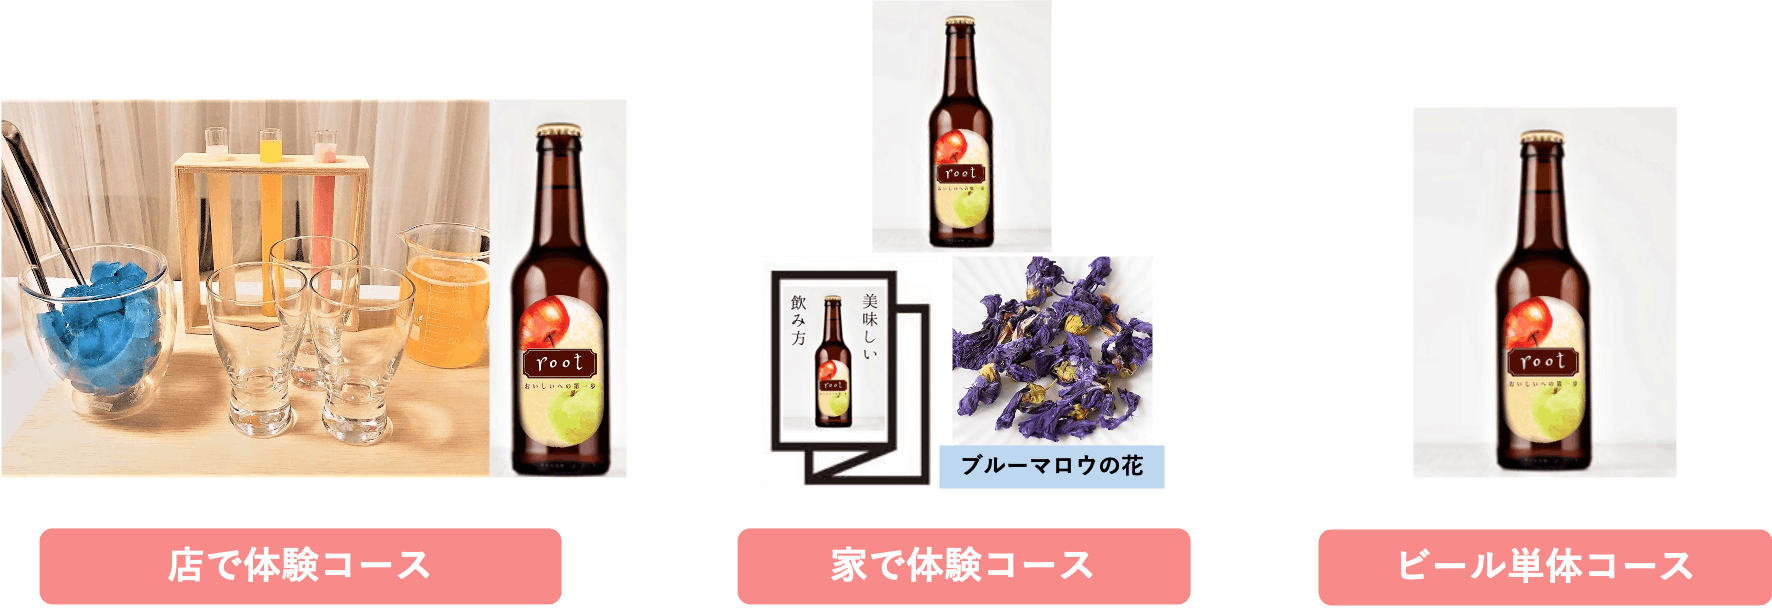 近畿大学生が考えたai ビール おいしいへの第一歩 林檎と梨のビールroot Campfire キャンプファイヤー